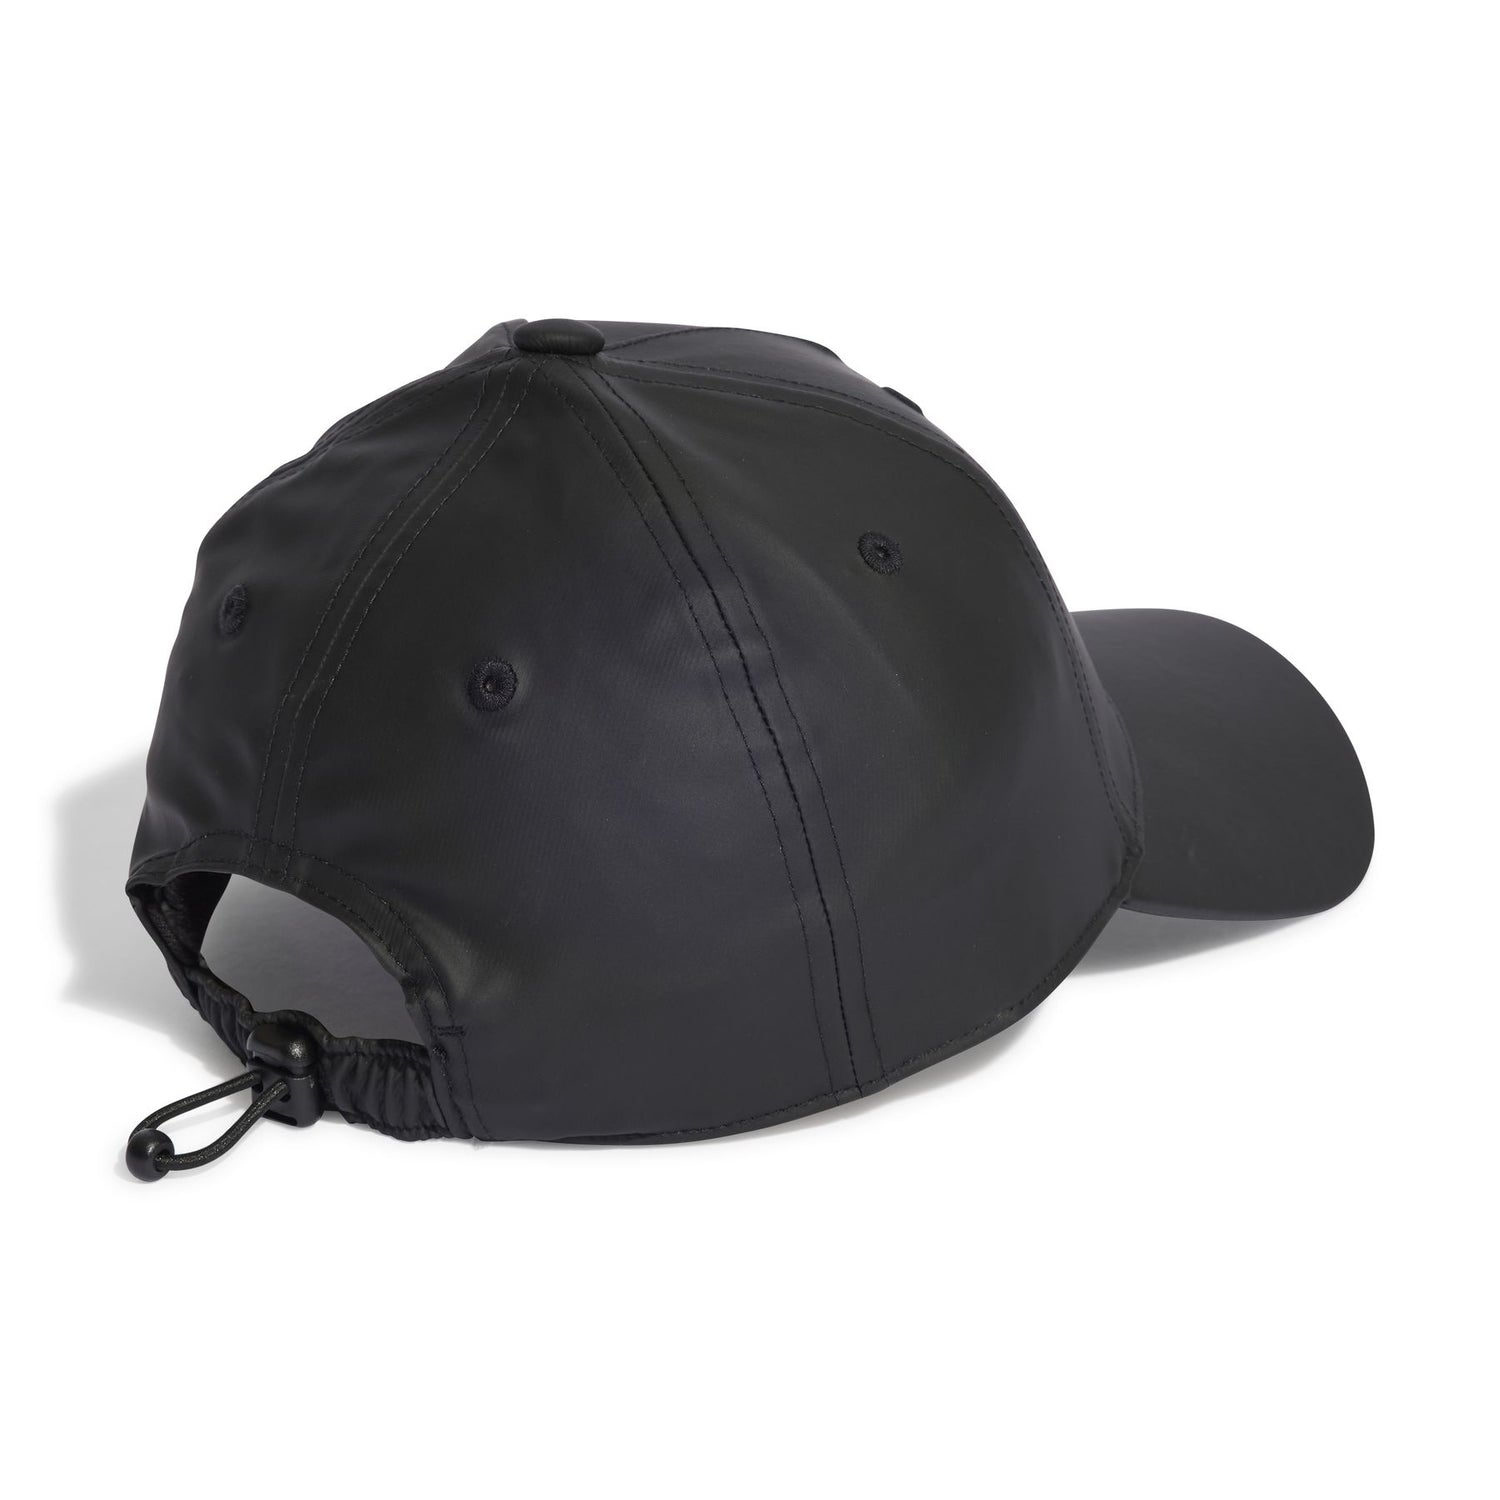 IB9050 SATIN CAP BLACK Unisex adulto Adidas CAPPELLO